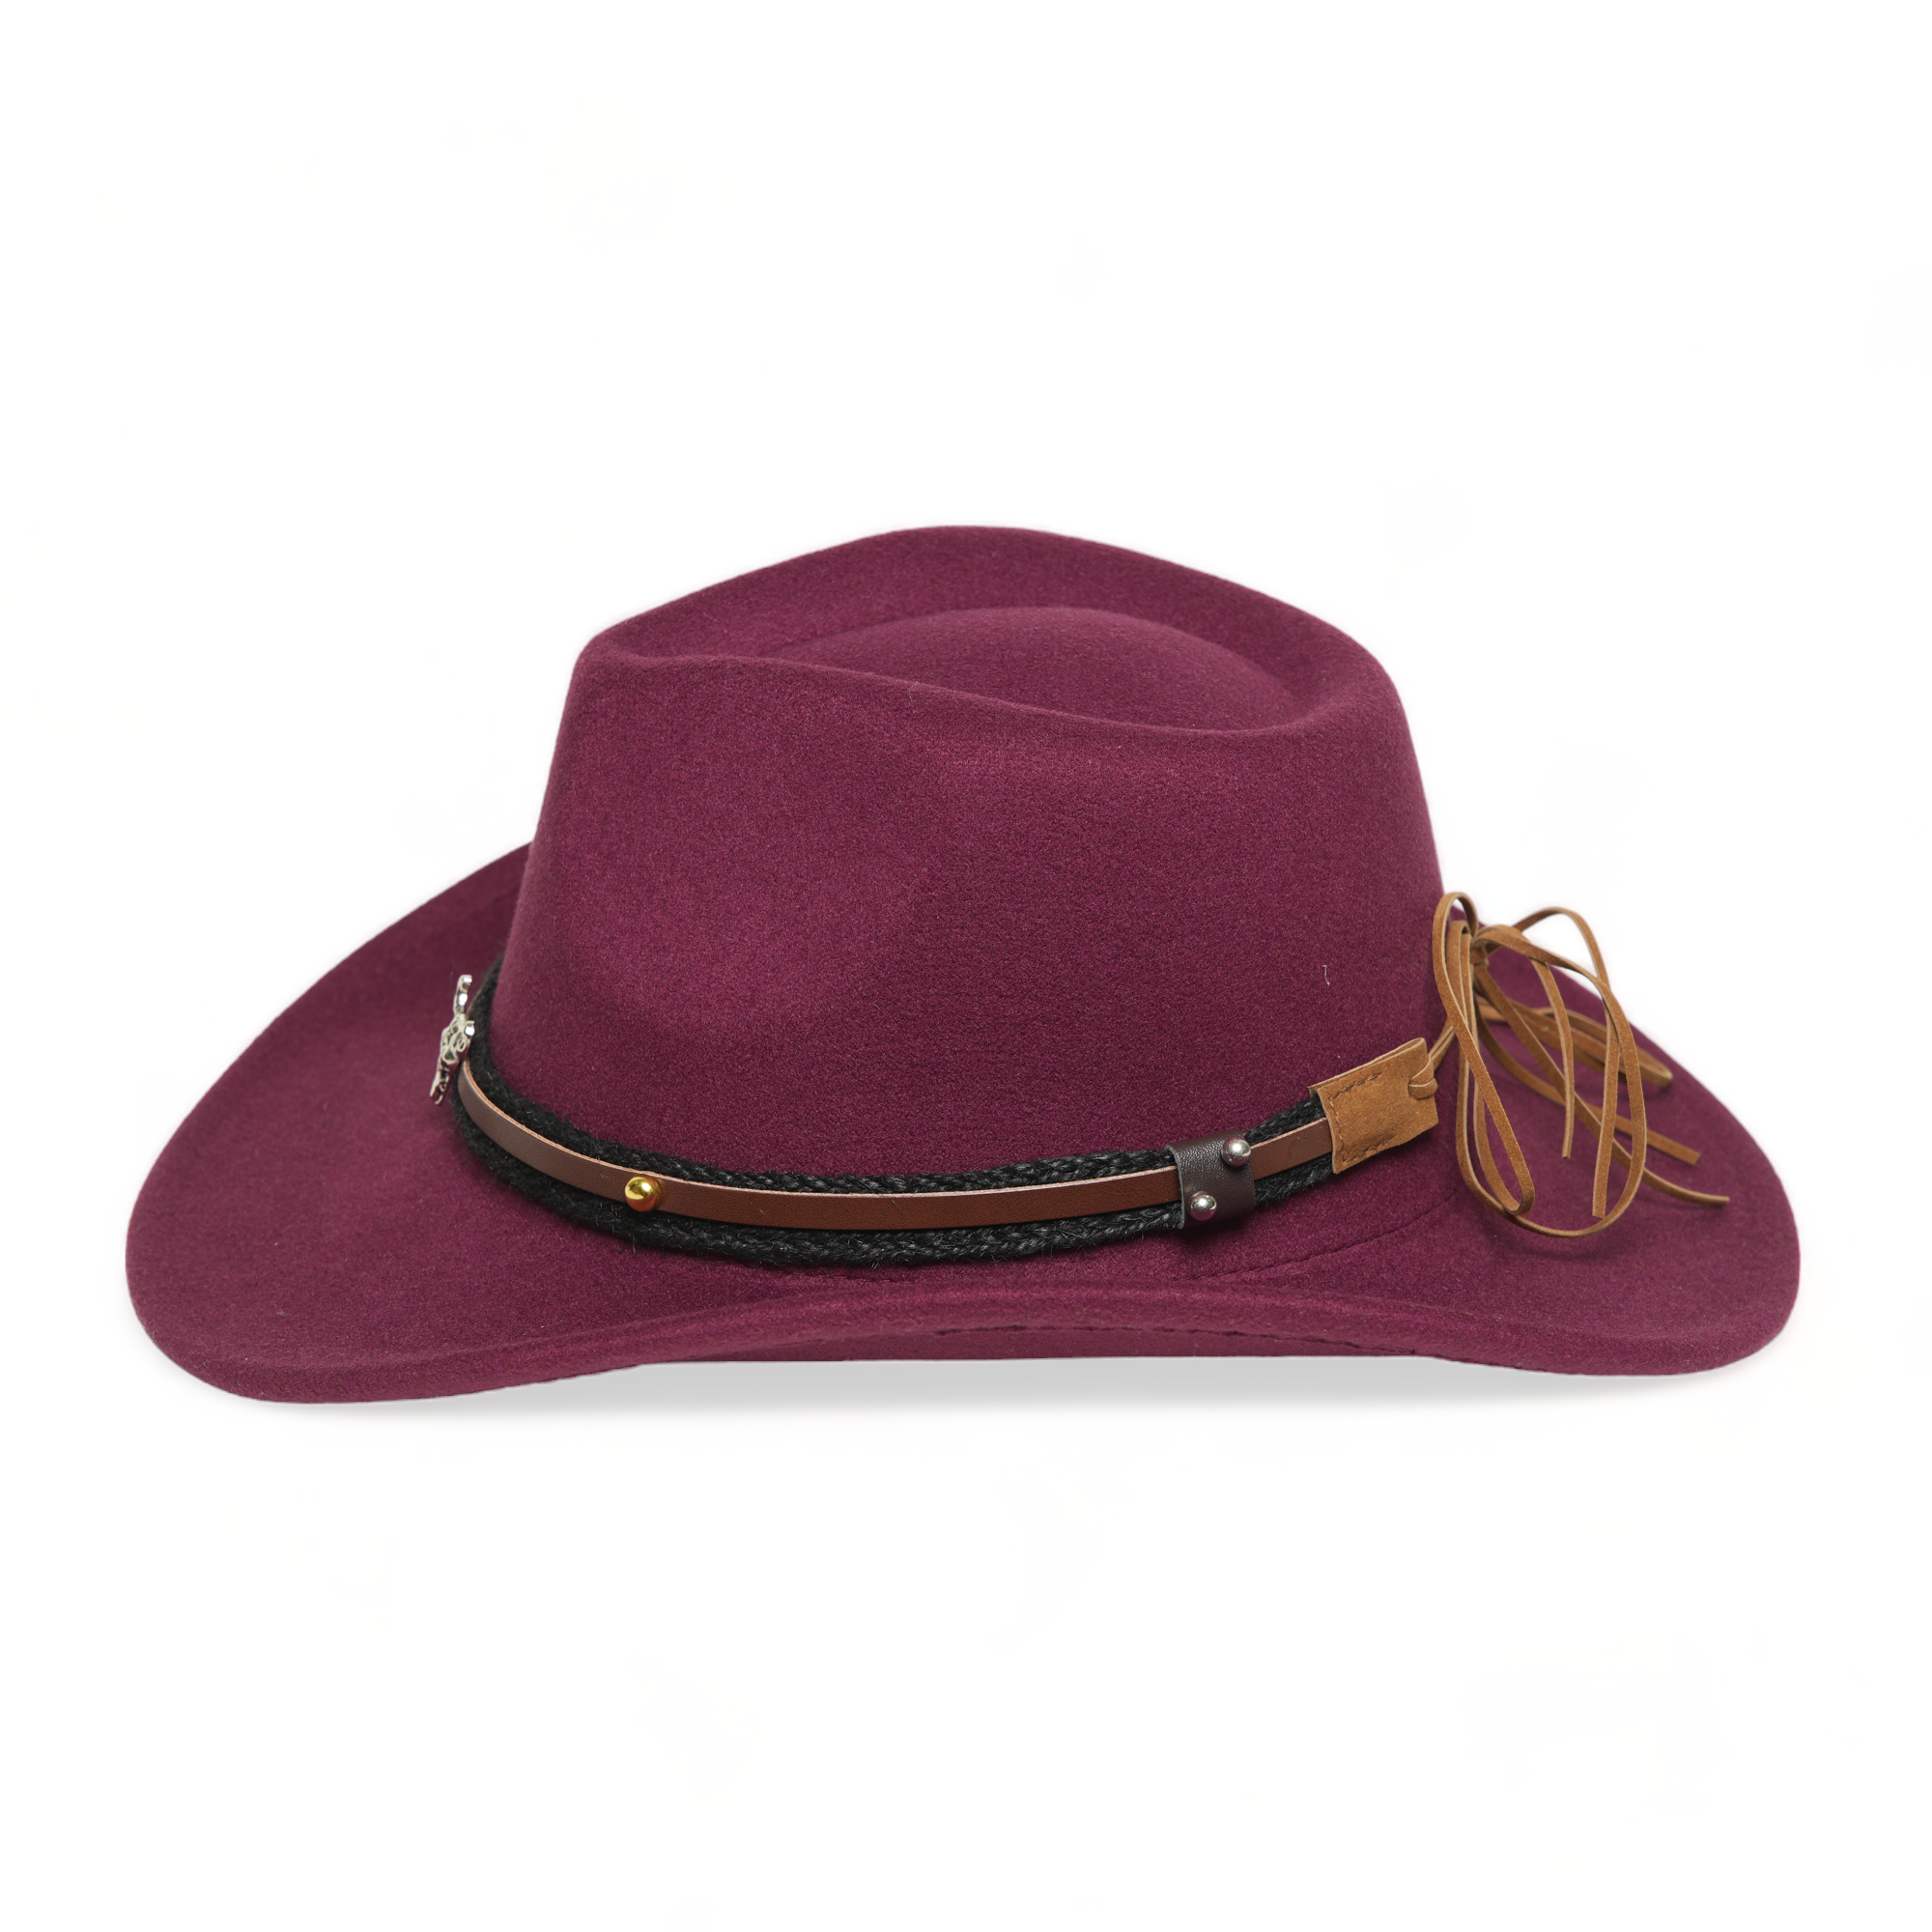 Chokore American Cowhead Fedora Hat (Burgundy)